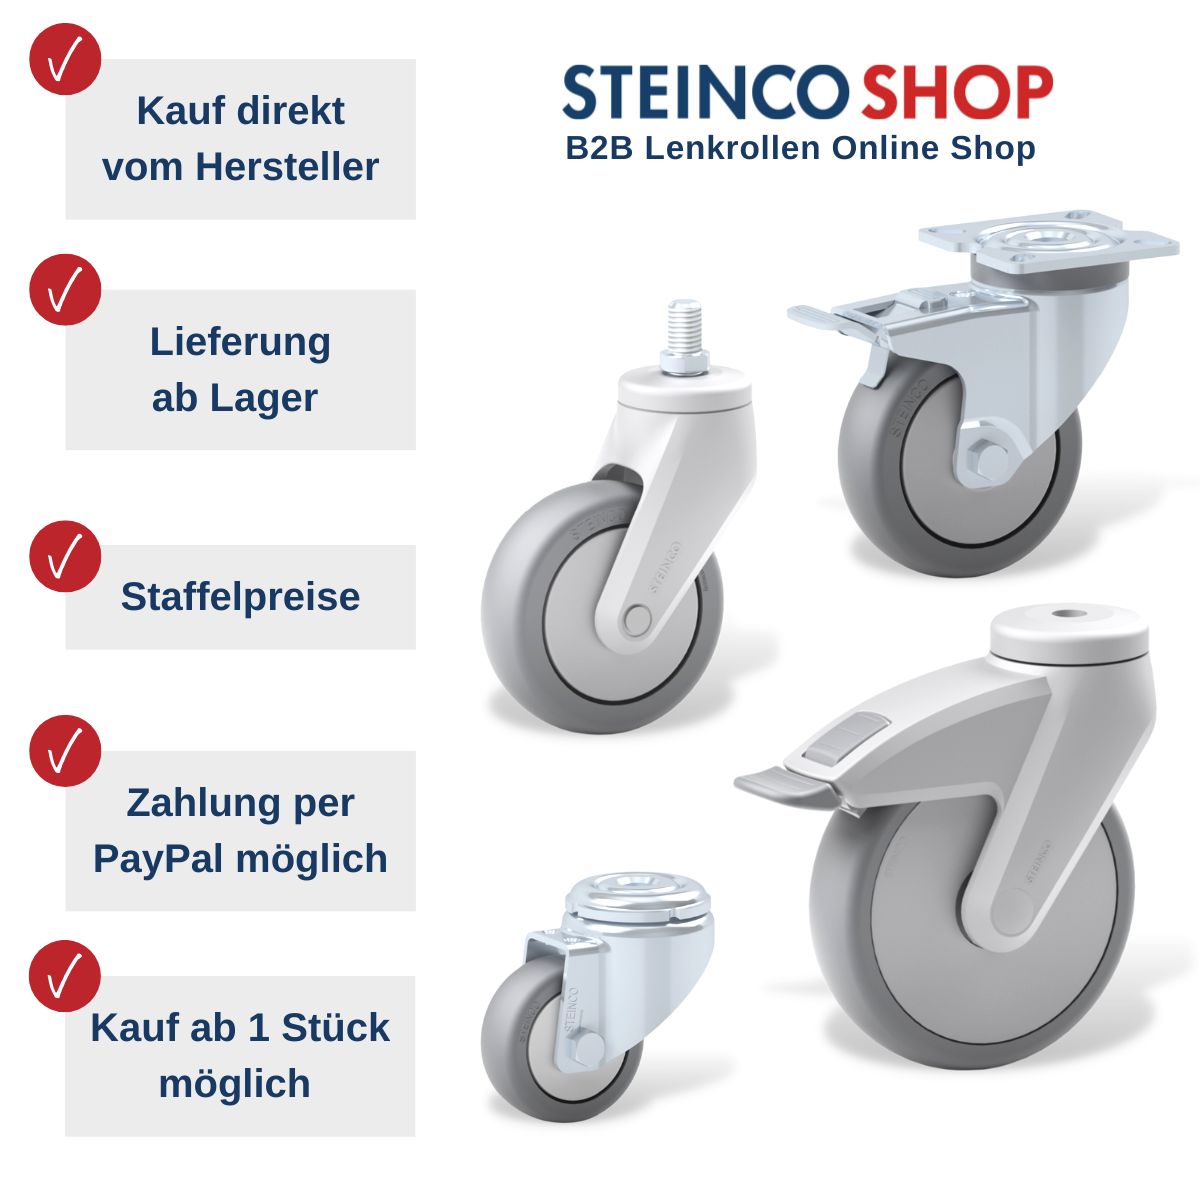 STEINCO SHOP Vorteile Kauf direkt vom Hersteller, Lieferung ab Lager, Staffelpreise, Zahlung per Paypal möglich, Kauf ab 1 Stück 